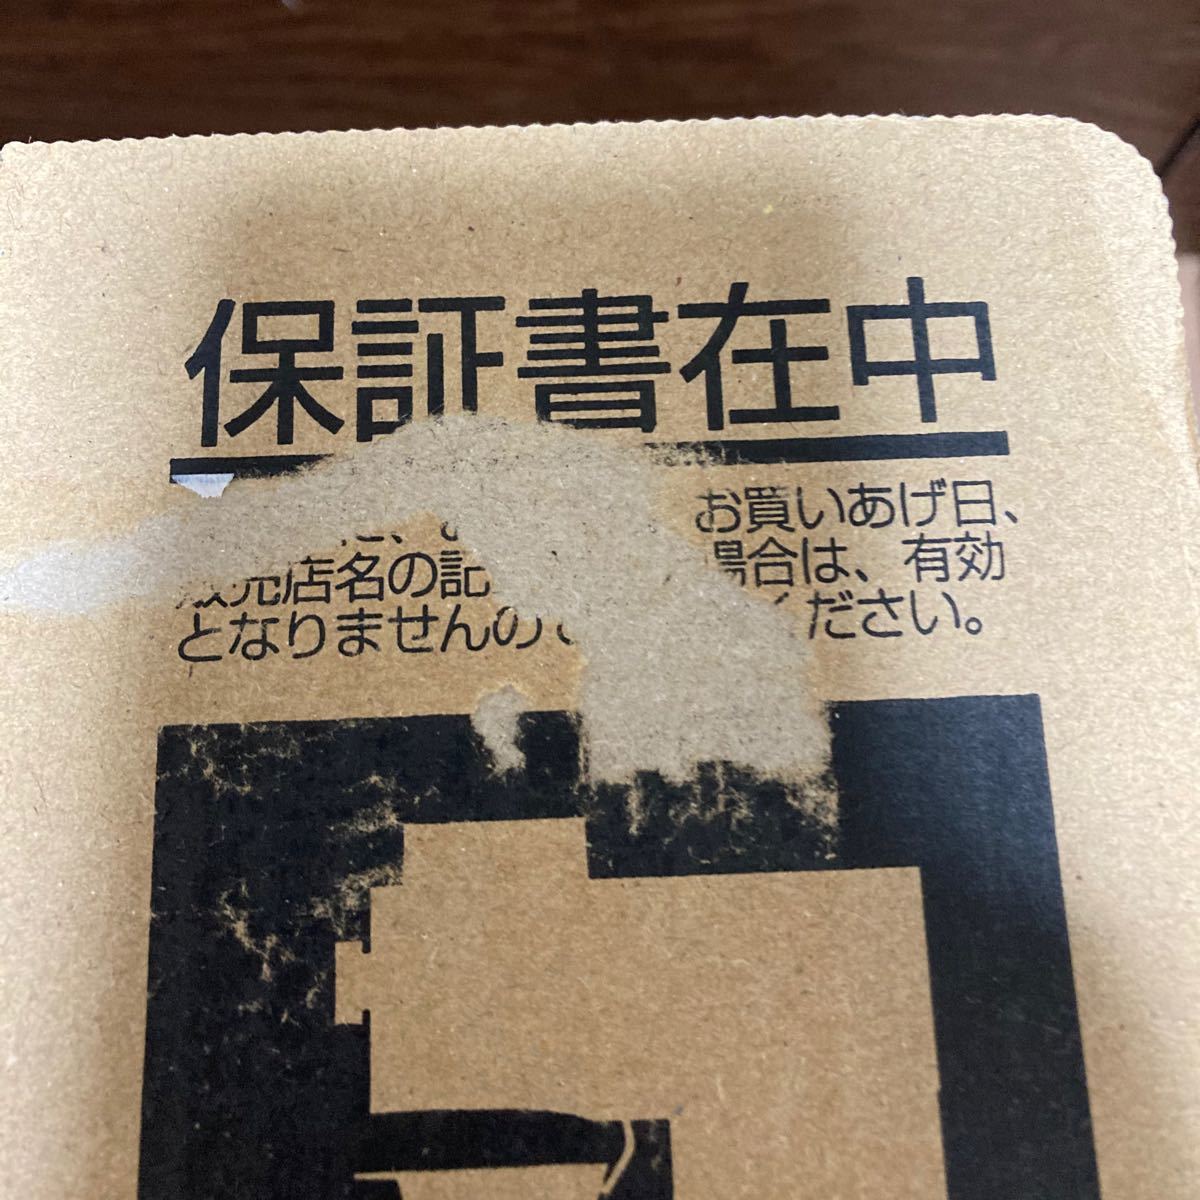 【新品未開封】ツインバード  全自動コーヒーメーカー  CM-D457B 